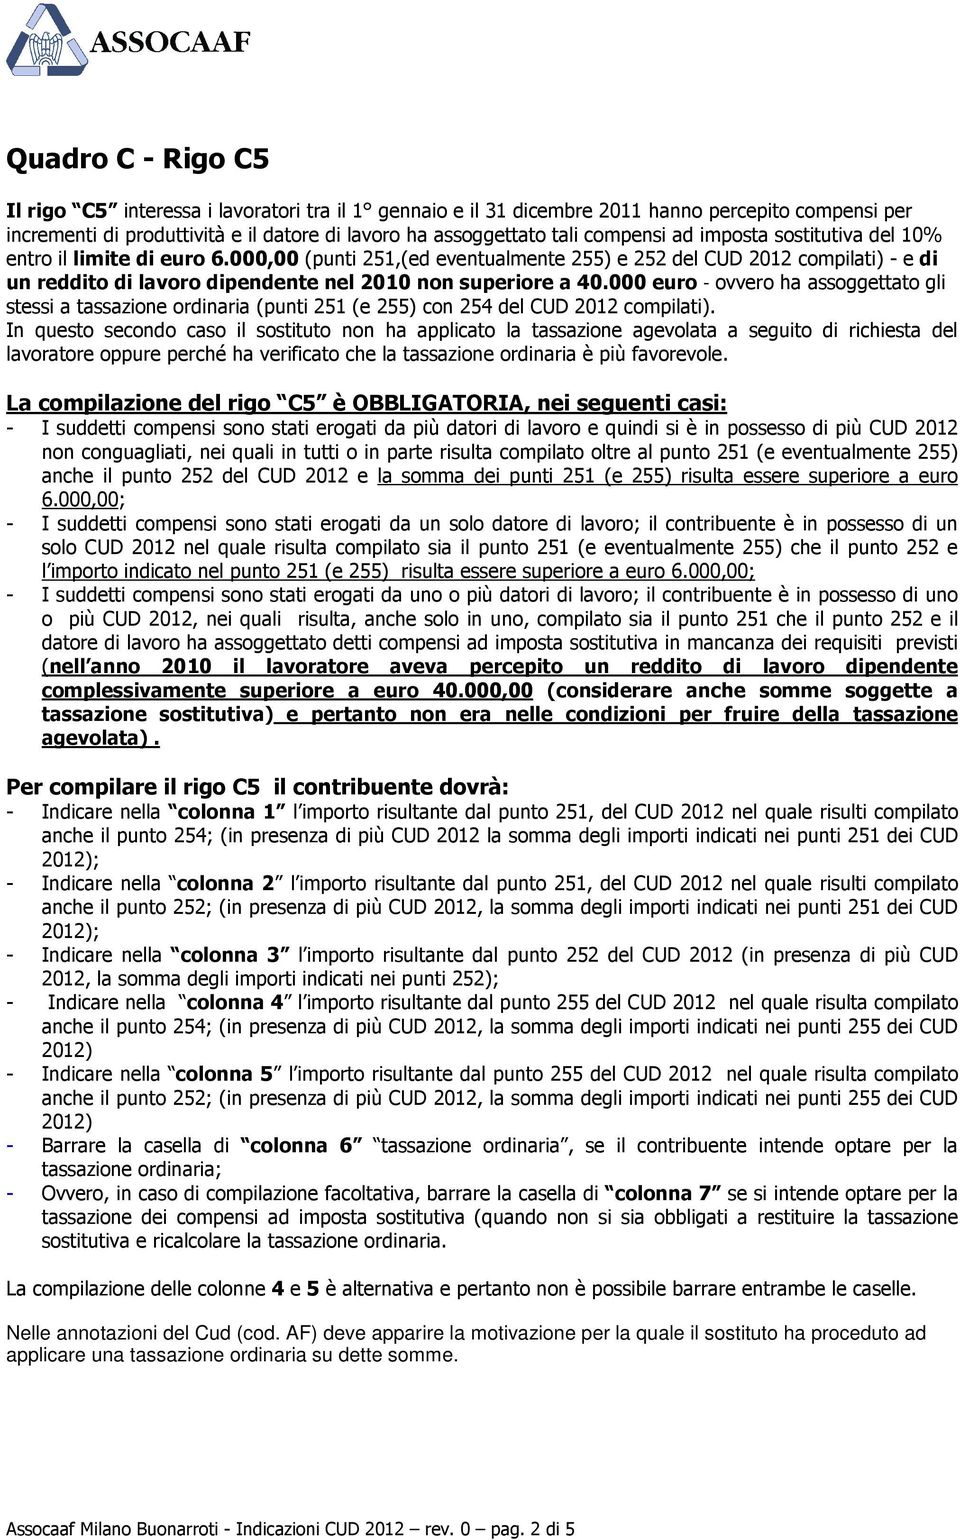 000 euro - ovvero ha assoggettato gli stessi a tassazione ordinaria (punti 251 (e 255) con 254 del CUD 2012 compilati).